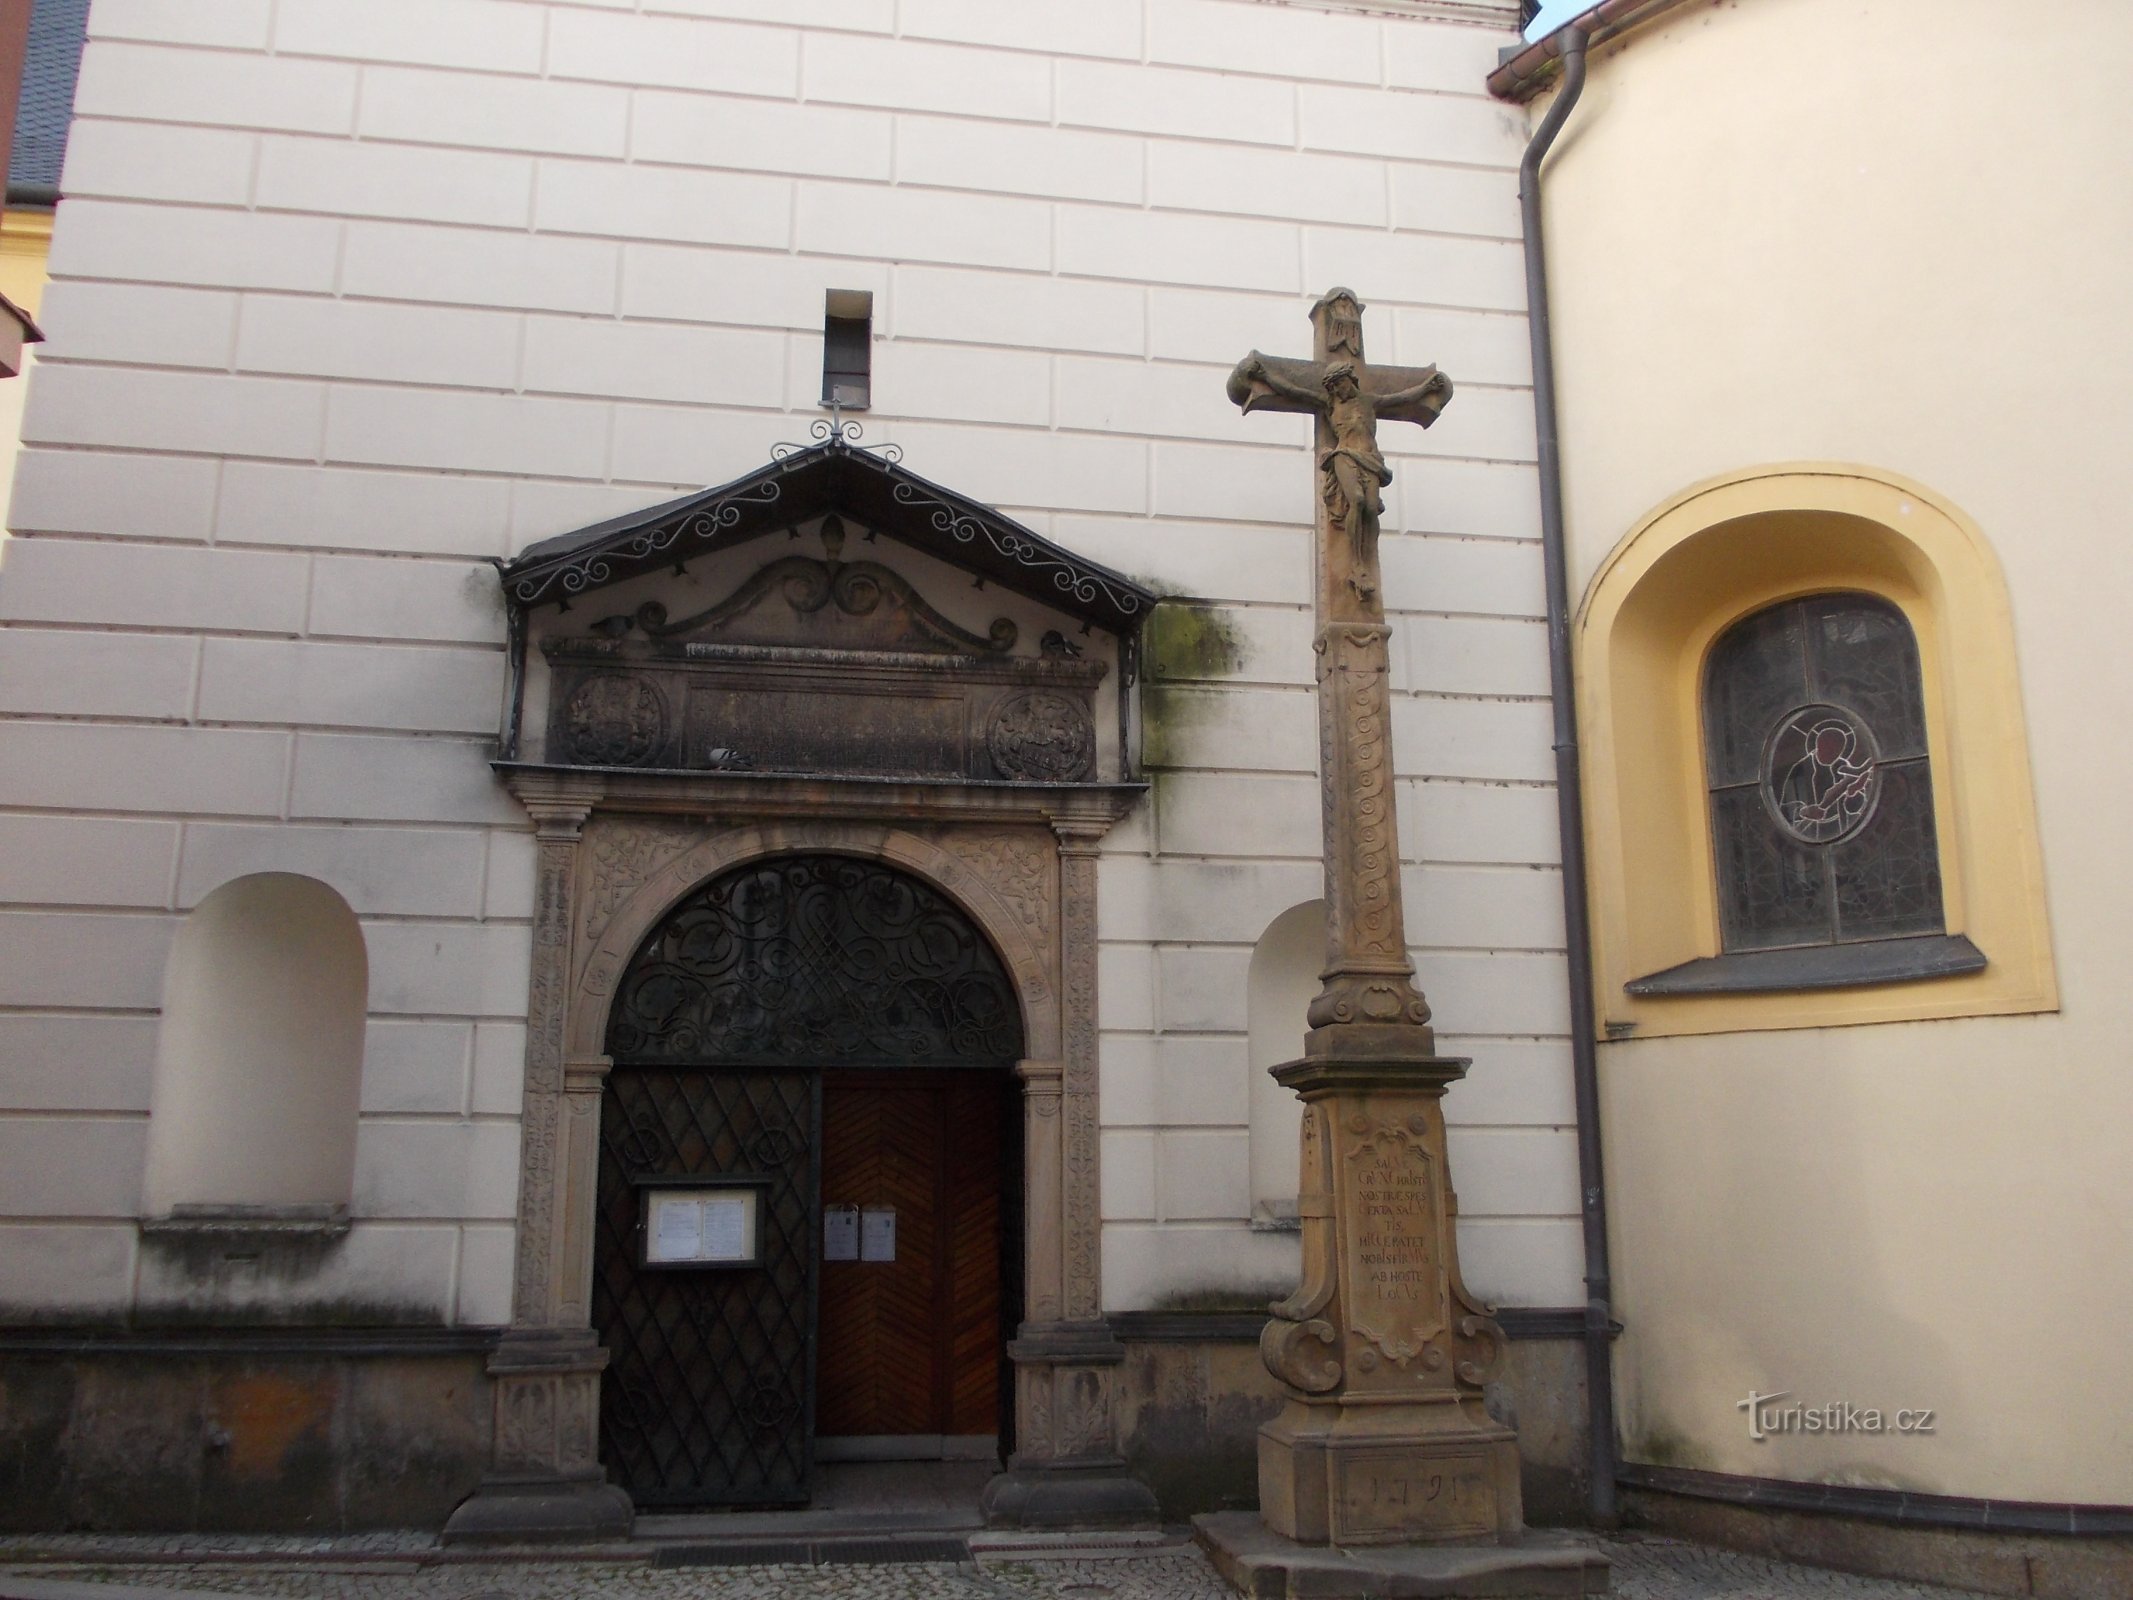 ingang van de kerk met een kruis